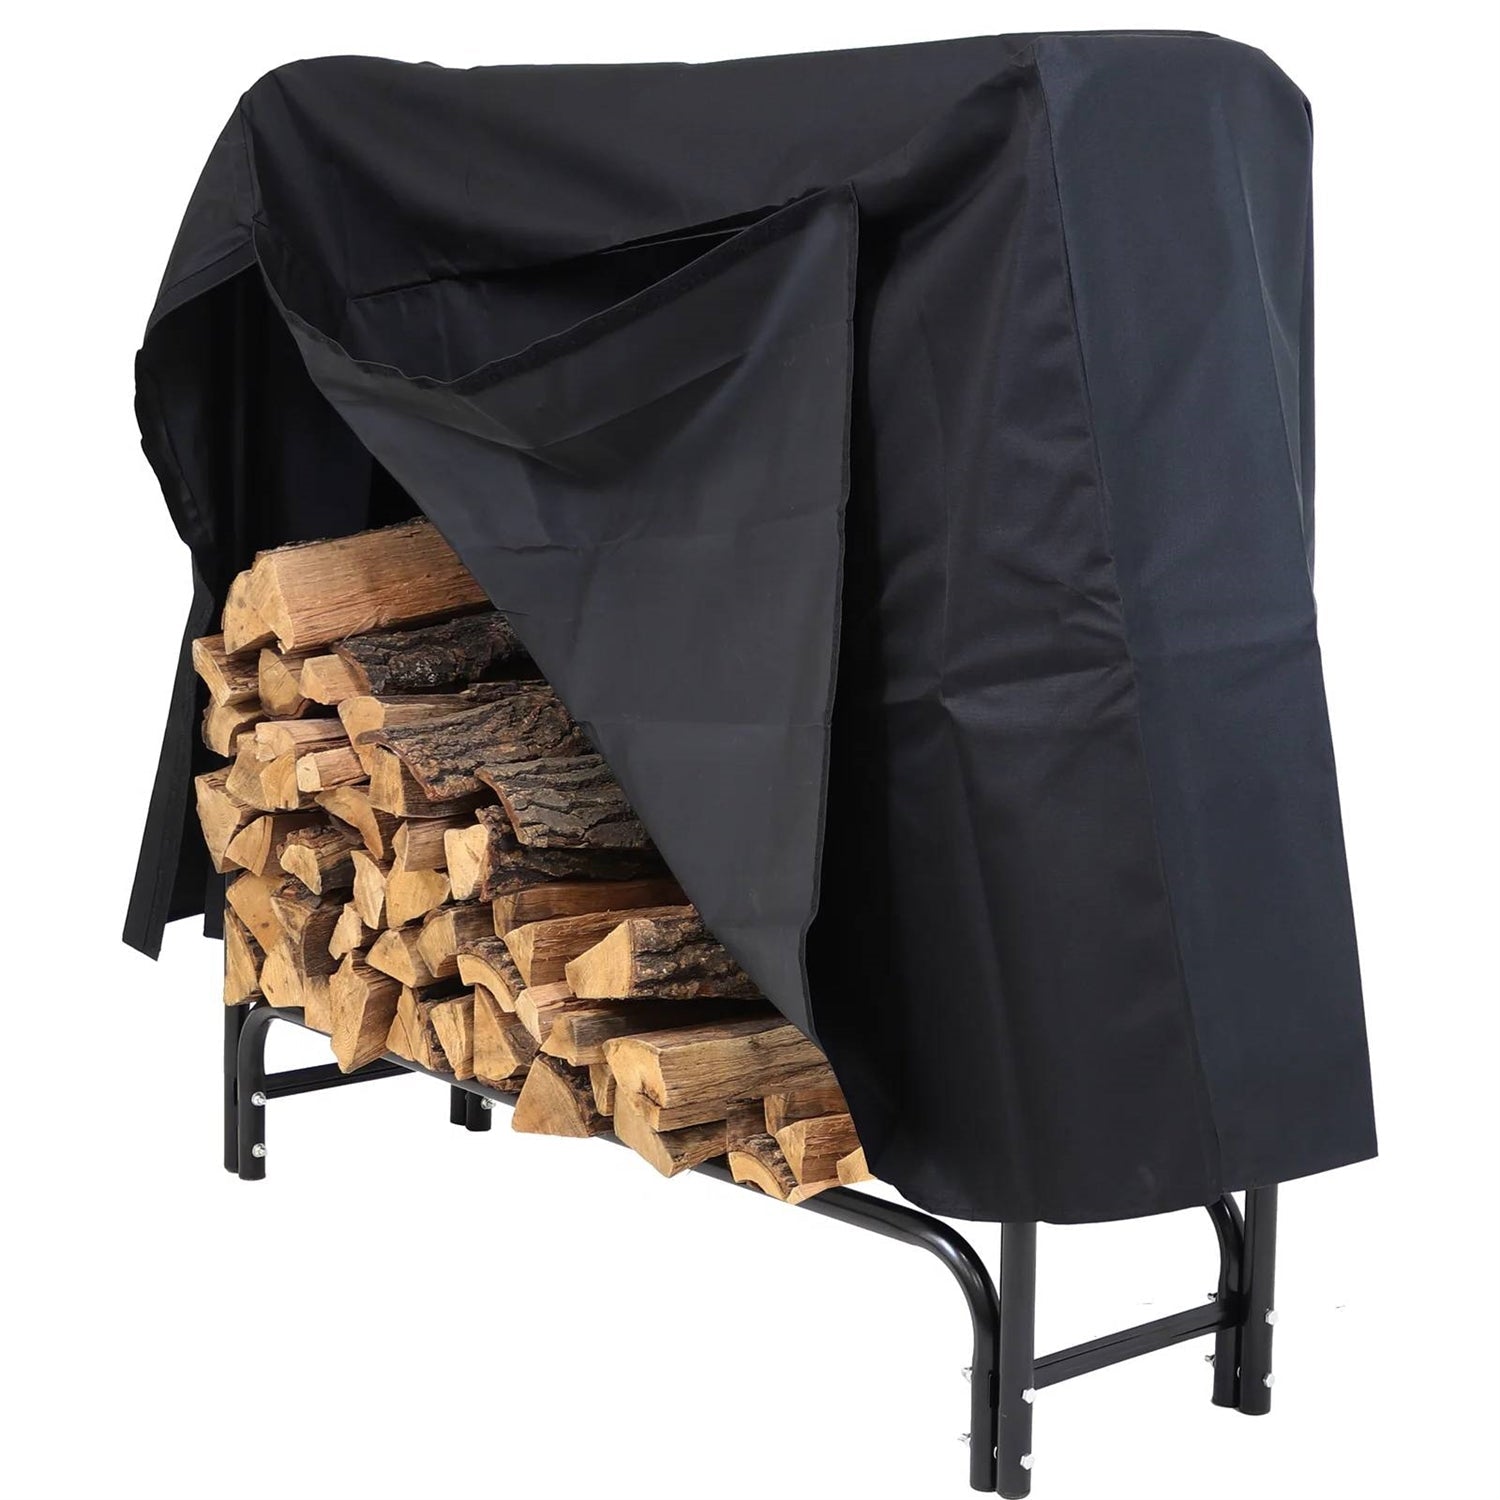 Outdoor > Firewood Racks - 4-Ft Indoor Outdoor Black Metal Firewood Holder Log Rack With Cover